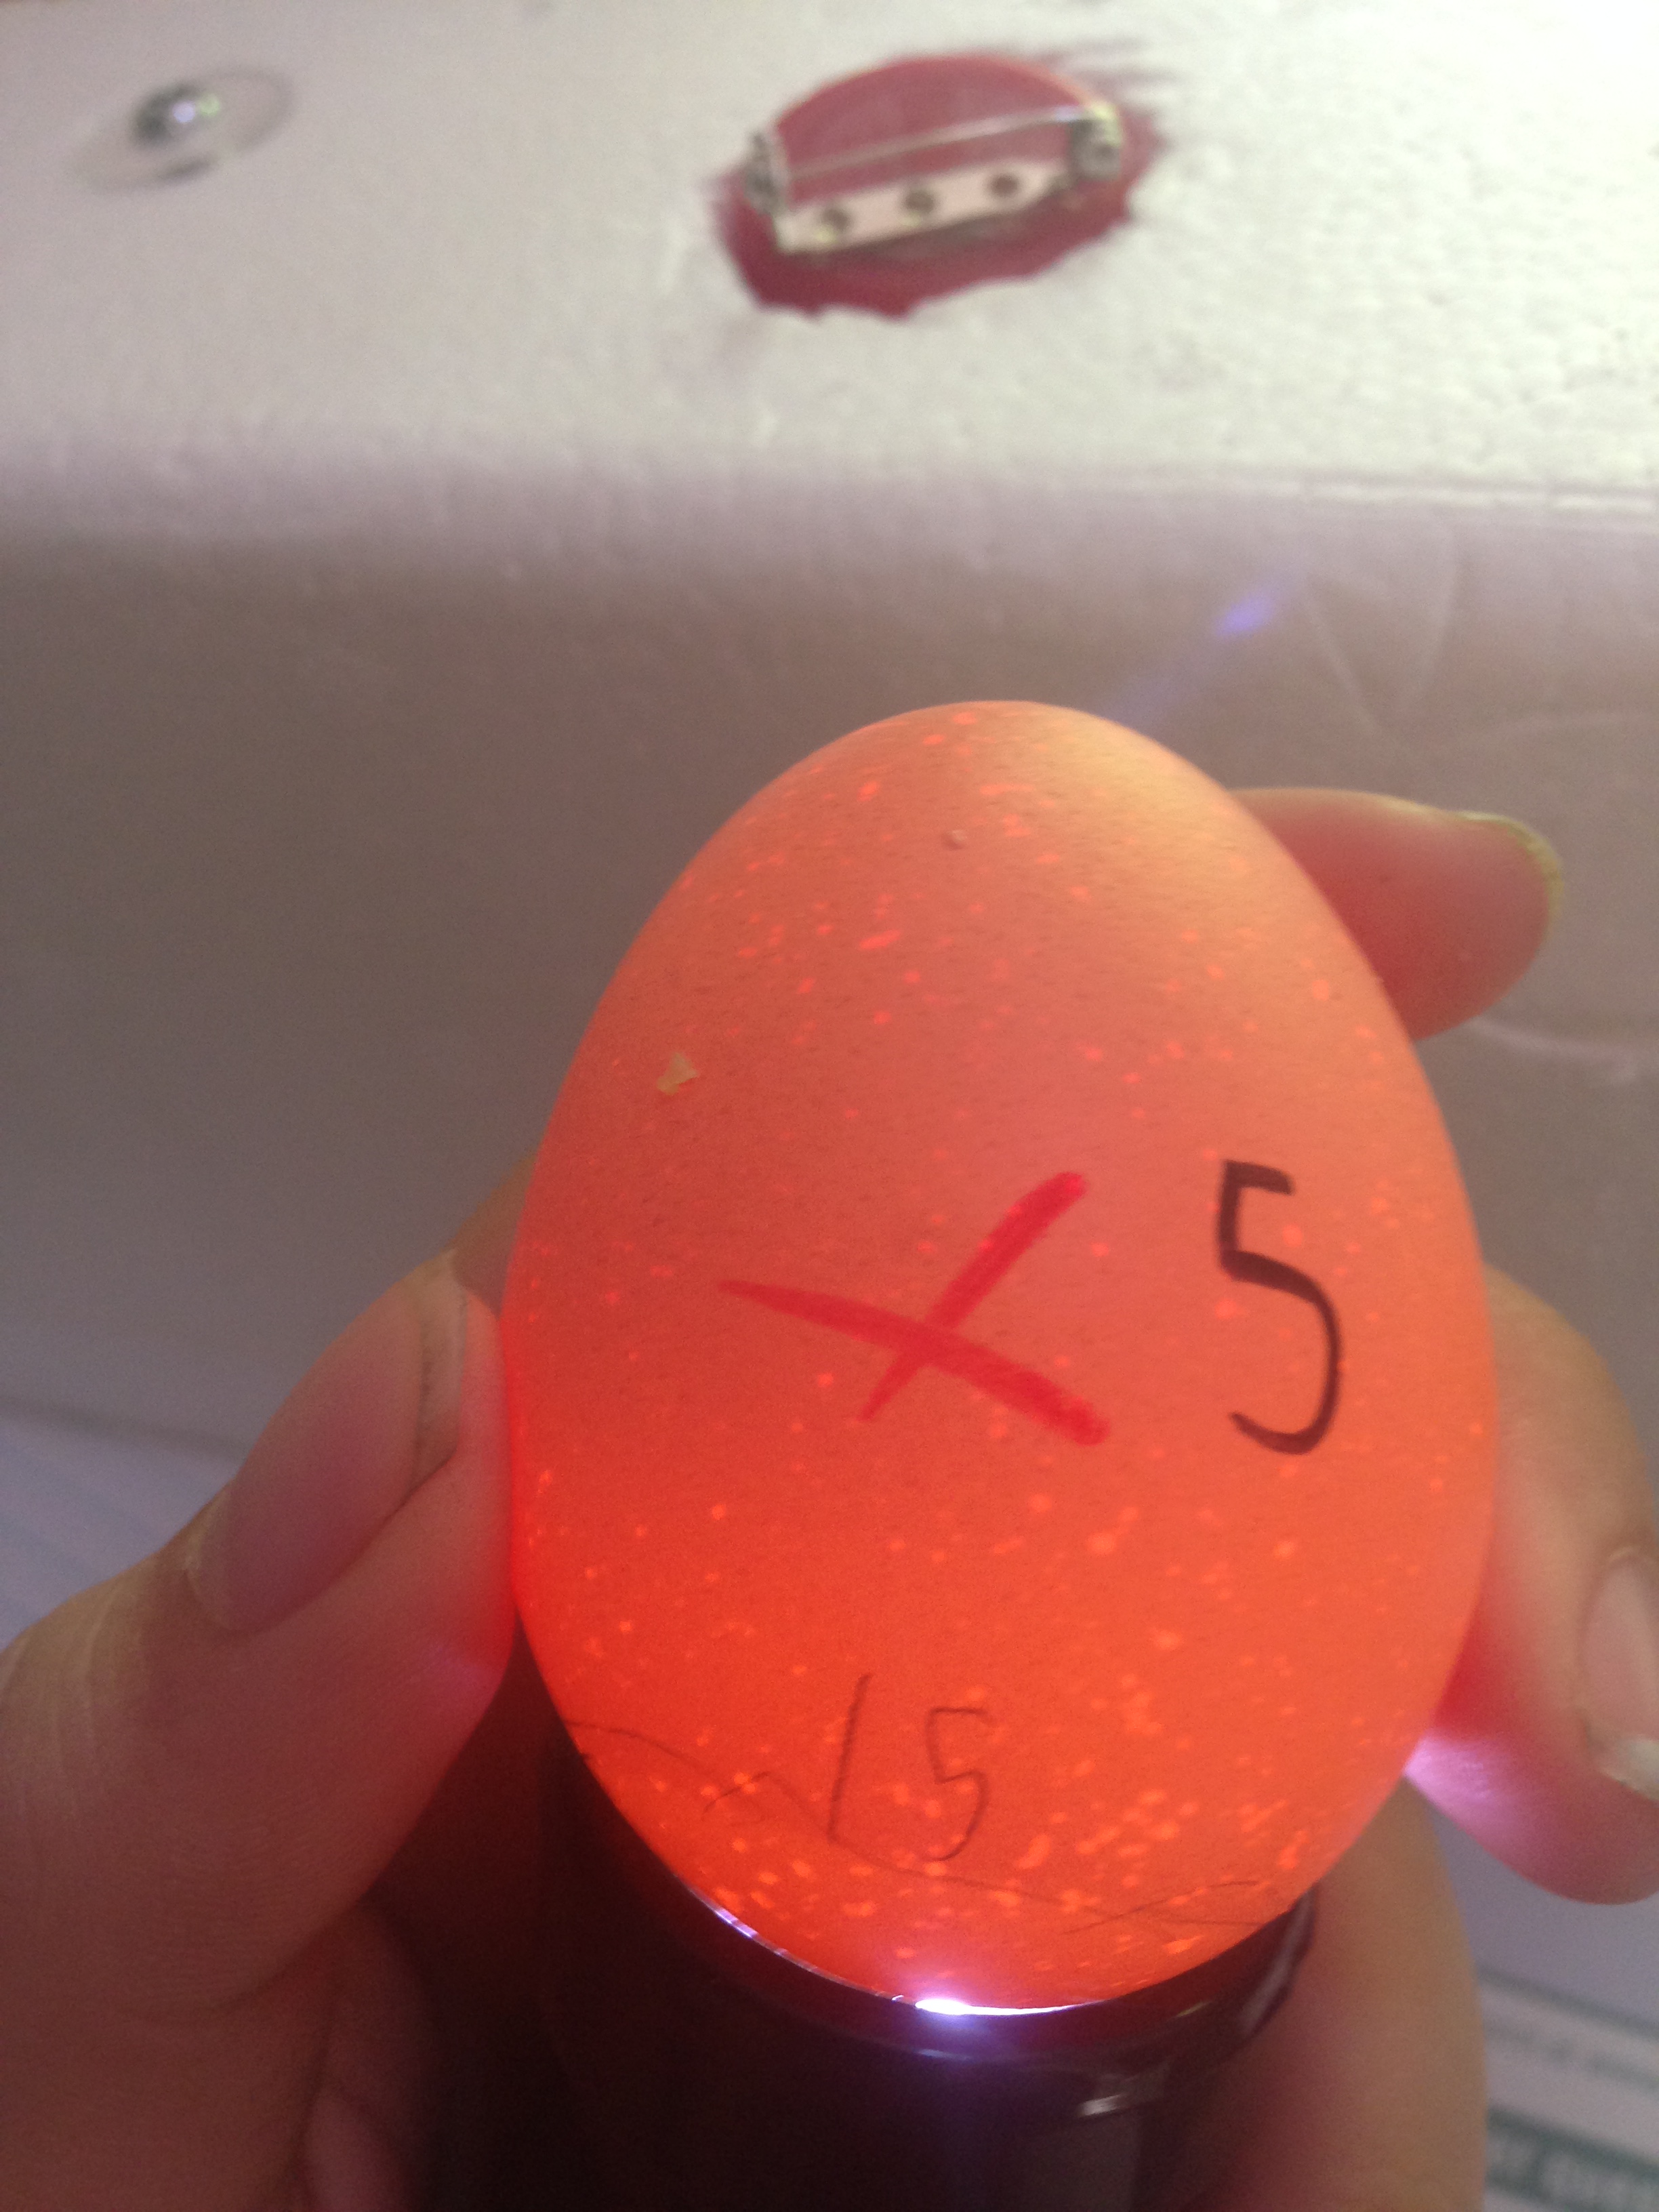 Egg 5 on day ~15